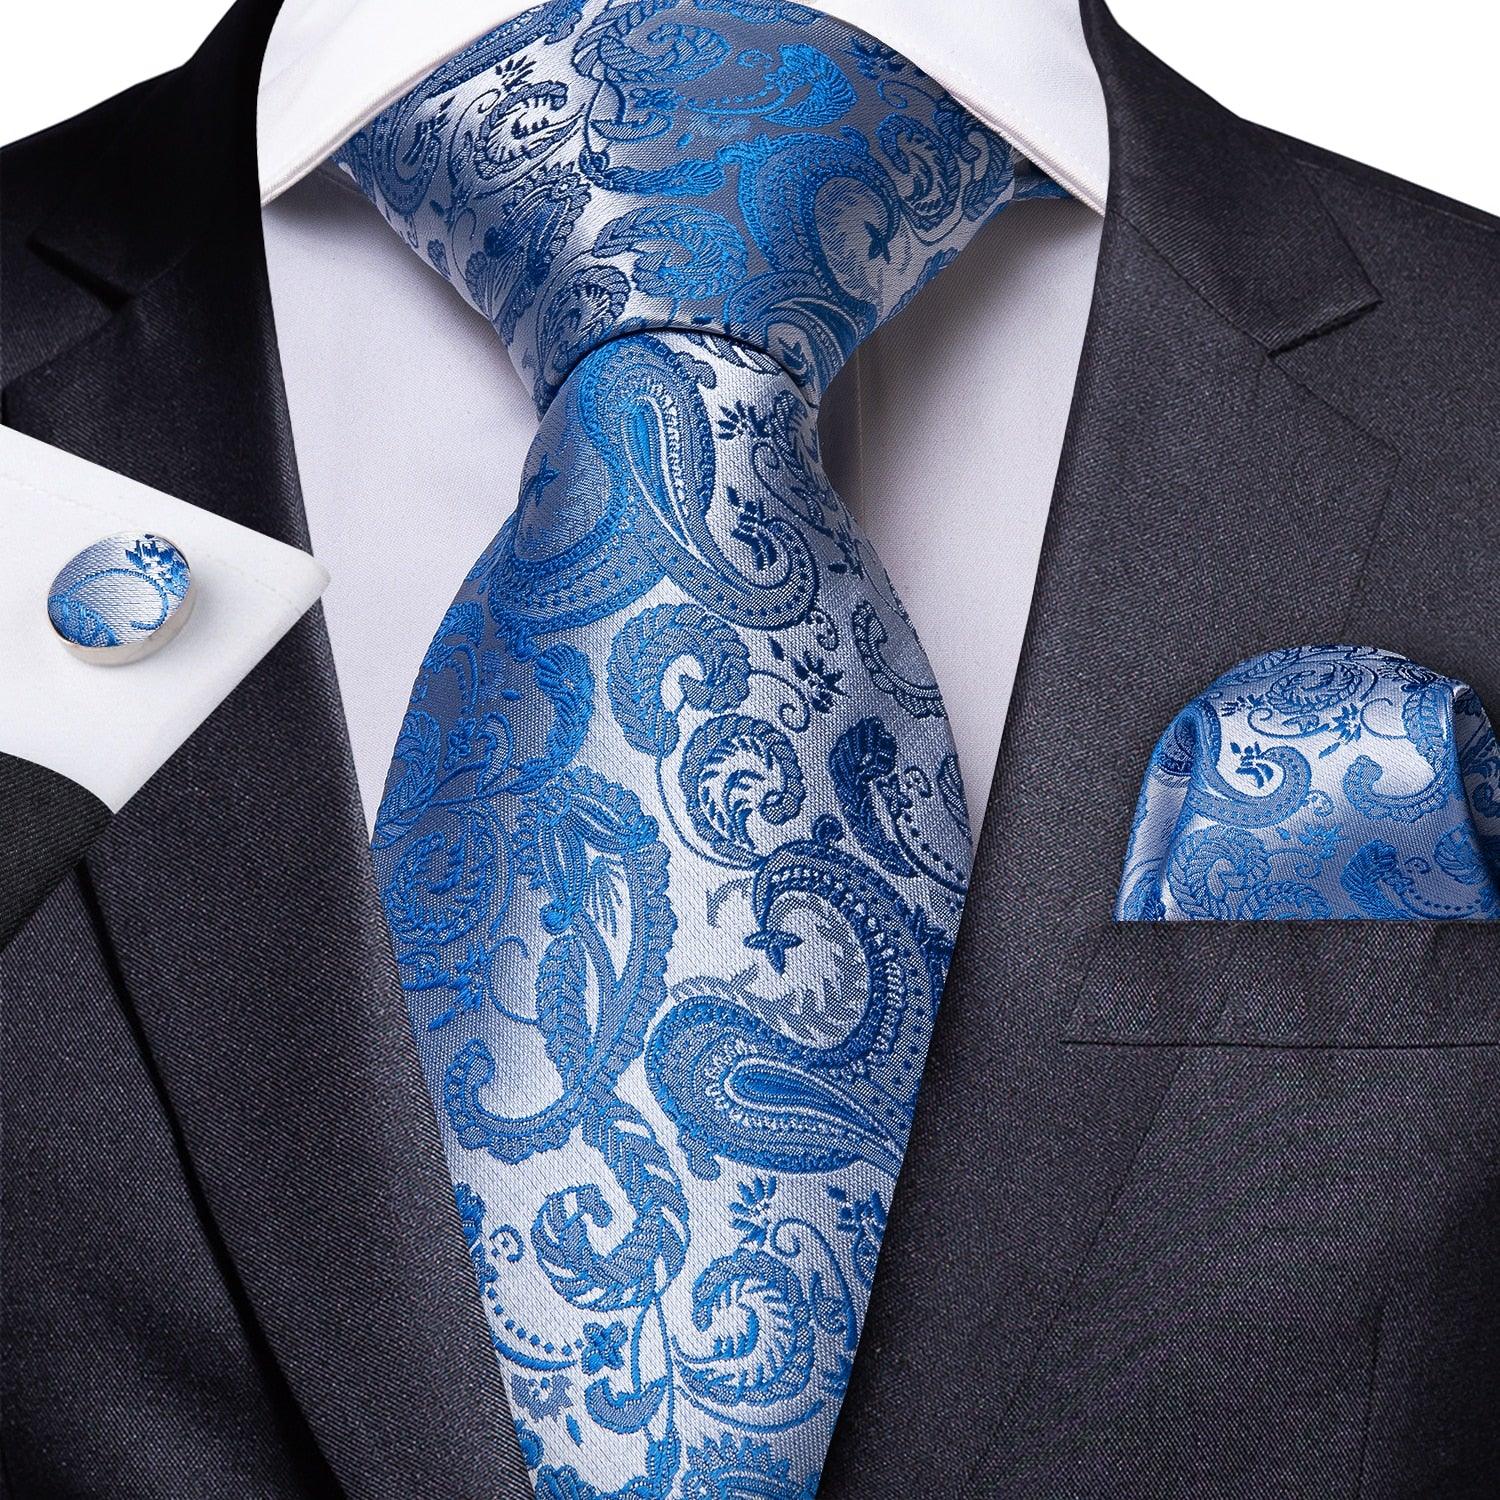 Men's Accessories - Ties Men Necktie Teal Blue Paisley Designer Silk Wedding Tie Hanky Cufflink Set